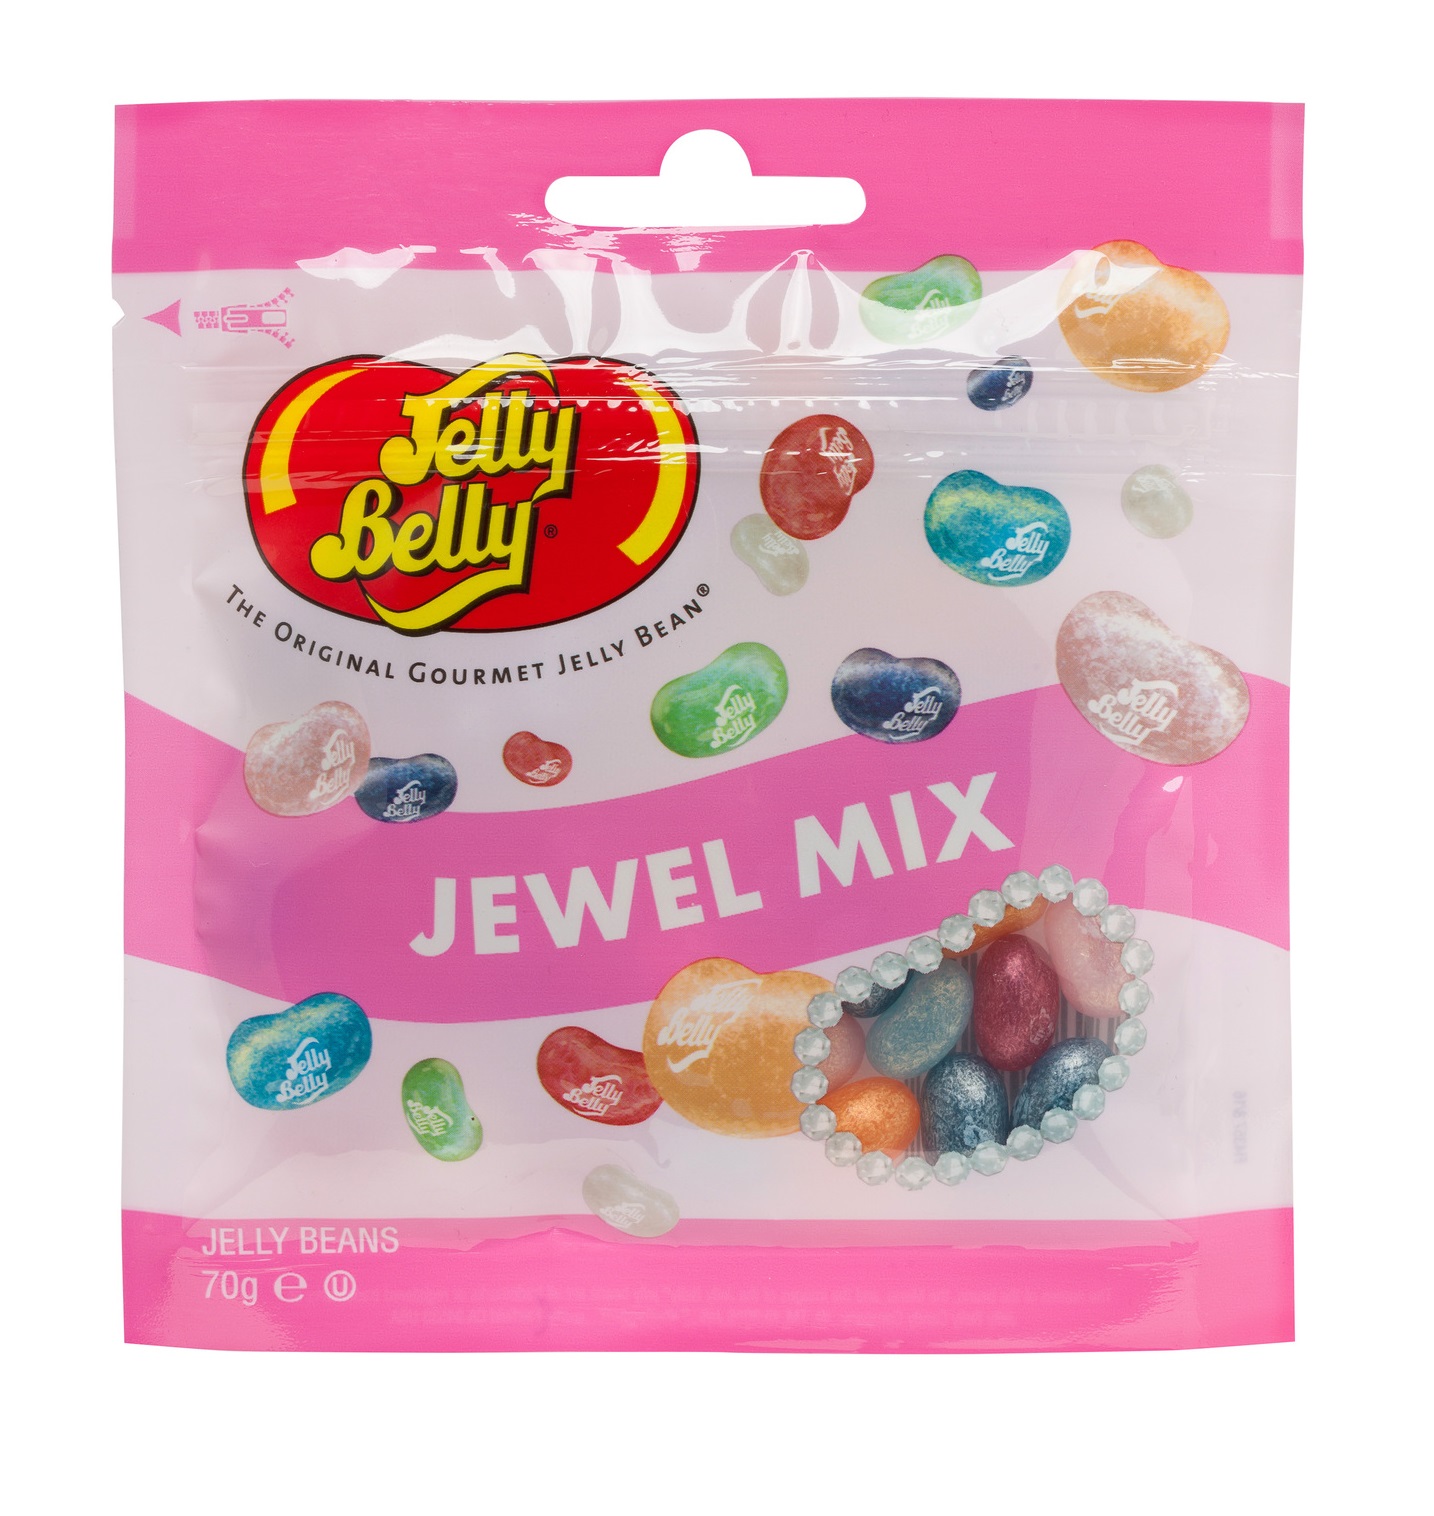 Вкусы jelly. Джелли Белли жевательные конфеты 70гр 20 вкусов. Драже жевательное Jelly belly фруктовое ассорти 70 г. Джелли Белли жевательные конфеты 70г "фруктовое ассорти". Jelly belly Jewel Mix.